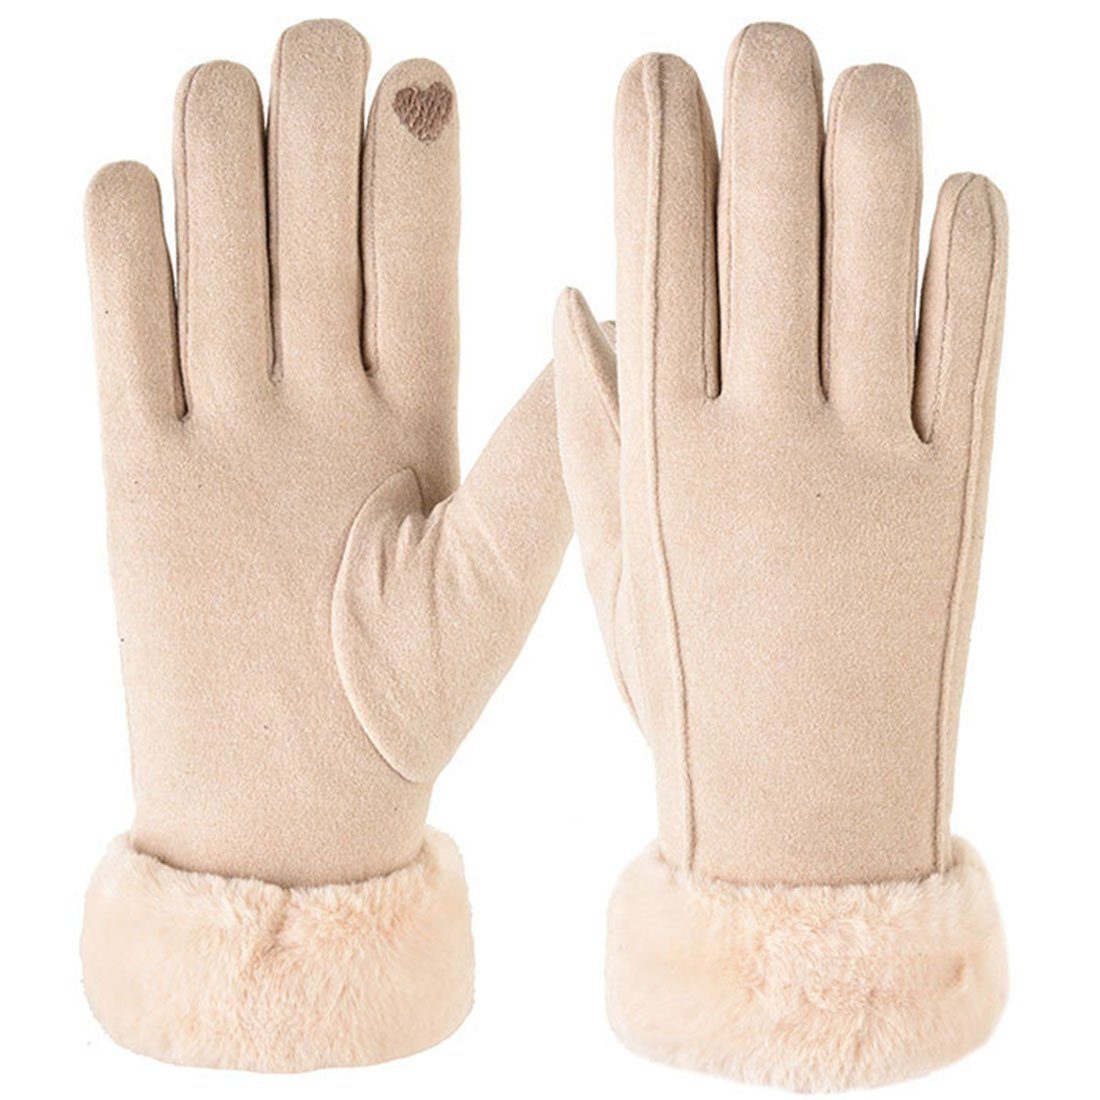 Ronner Winterwarme UG Handschuhe, Handschuhe, kalte Touchscreen-Handschuhe Baumwollhandschuhe